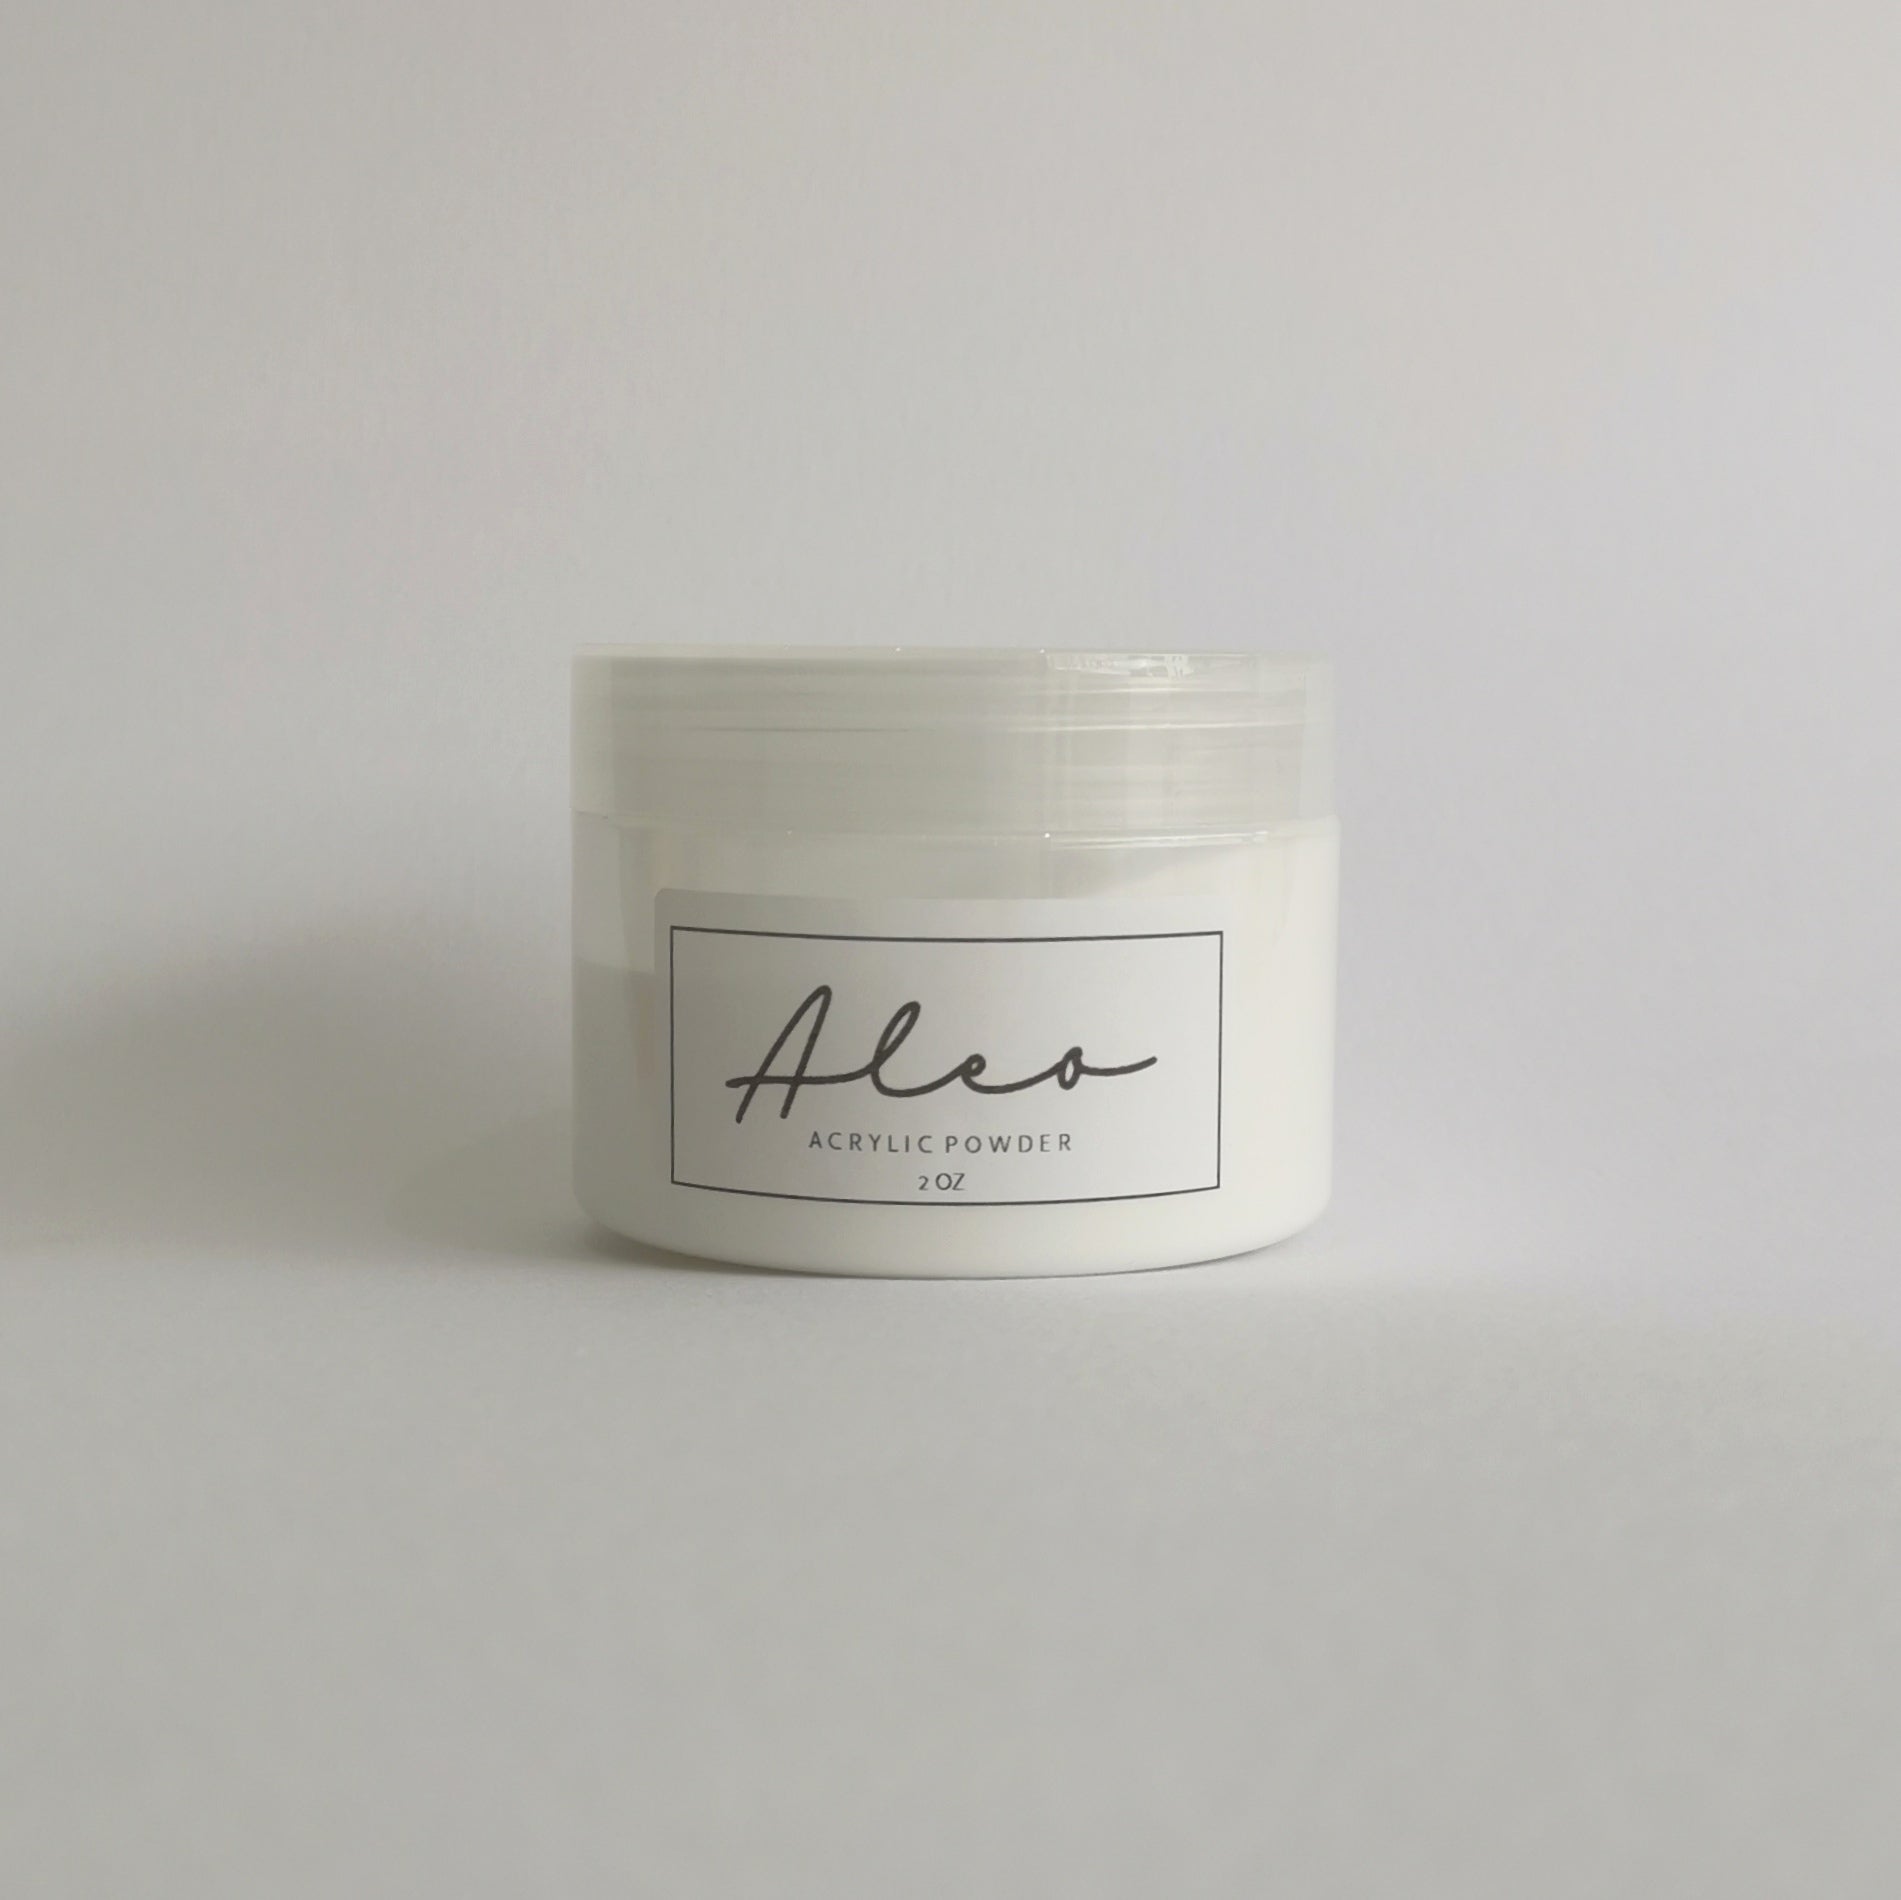 ALEO Acrylic Powder Soft White - Creative Beauty